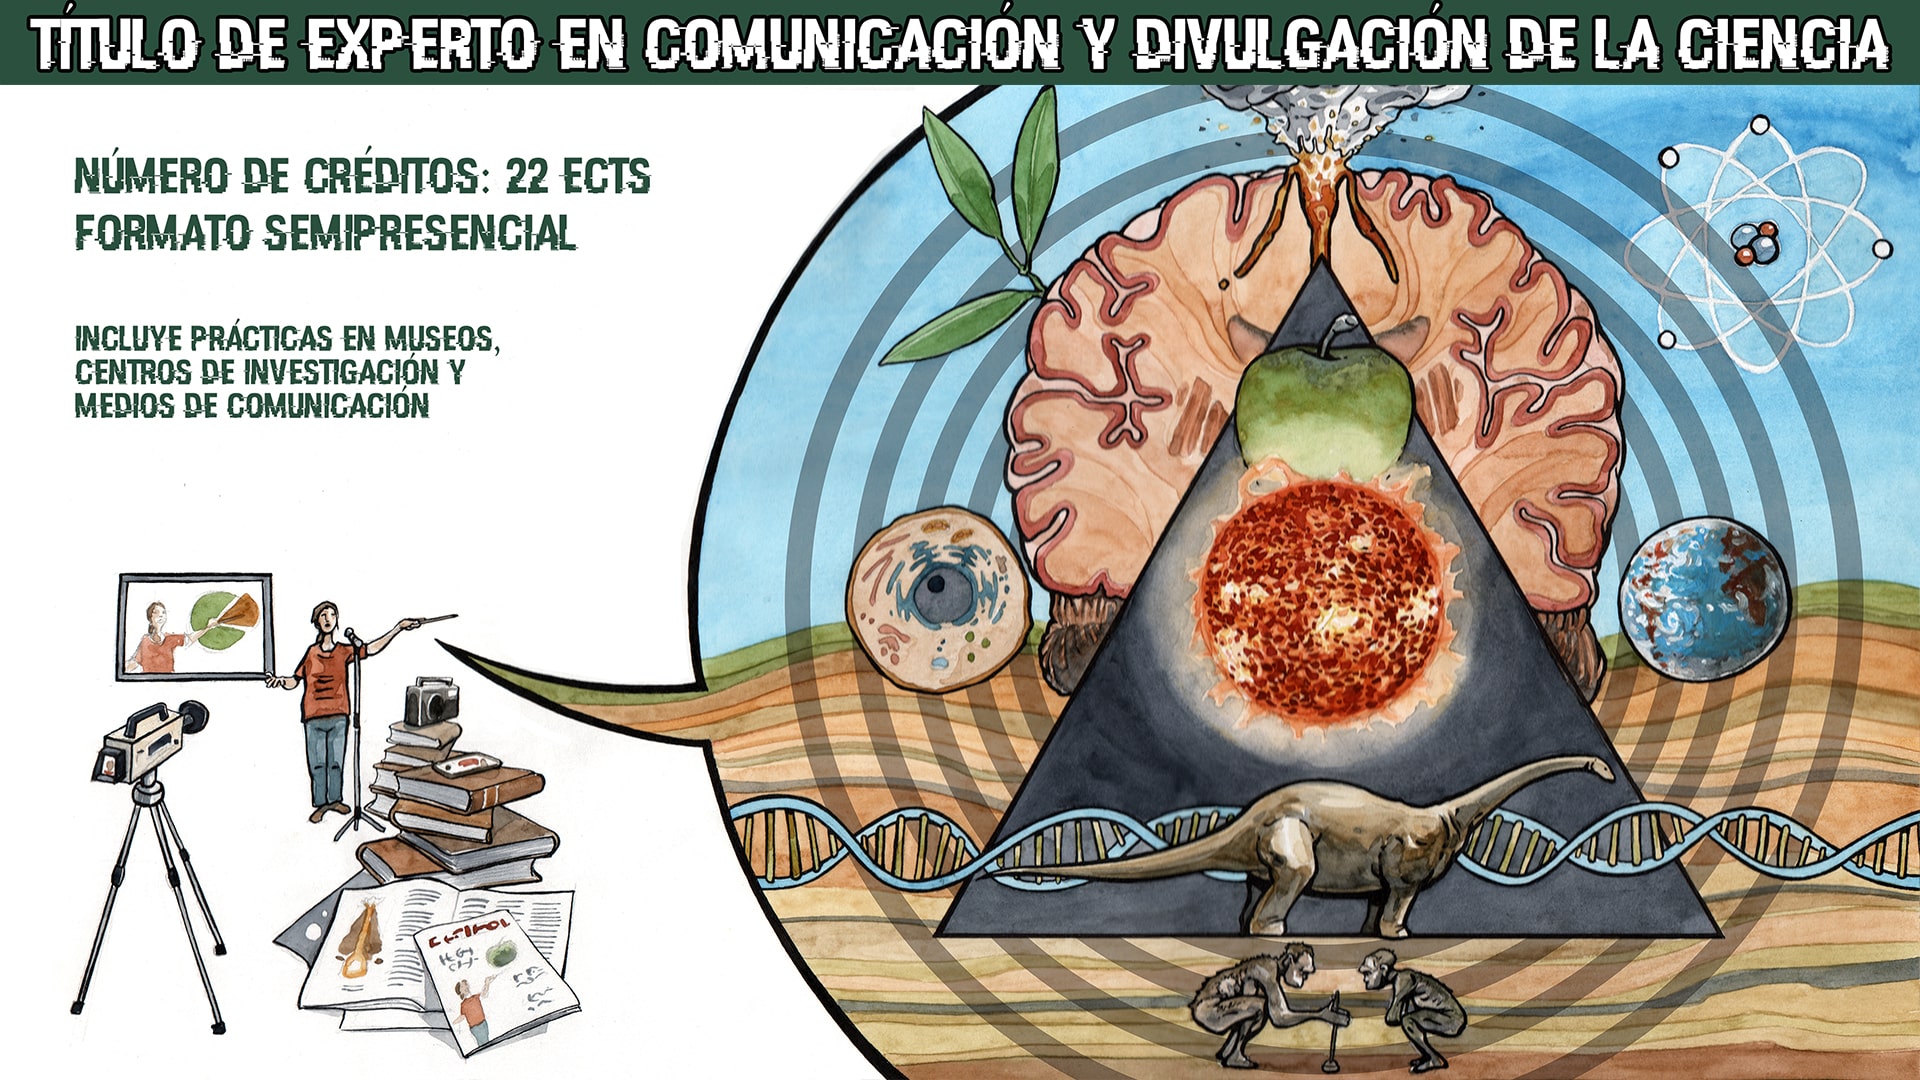 Cartel del Título de Experto en Comunicación Pública y Divulgación de la Ciencia